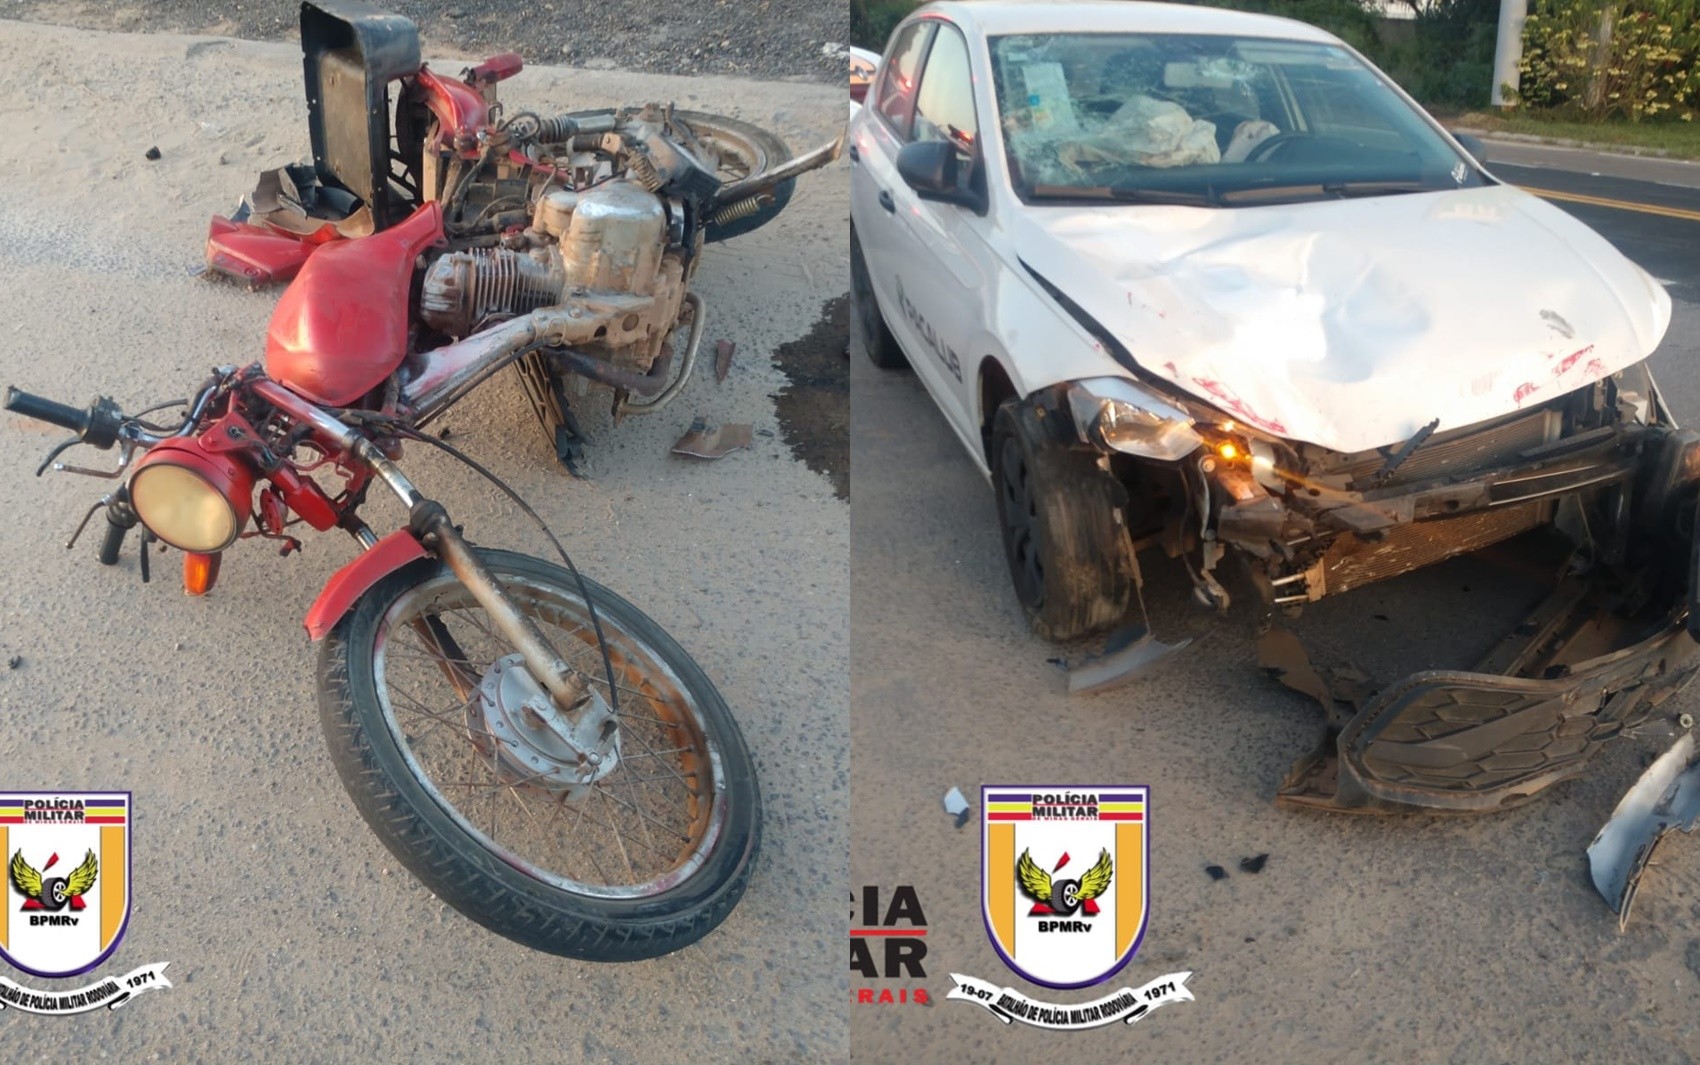 Motociclista fica gravemente ferido após batida com carro na BR-265, em Santana da Vargem, MG